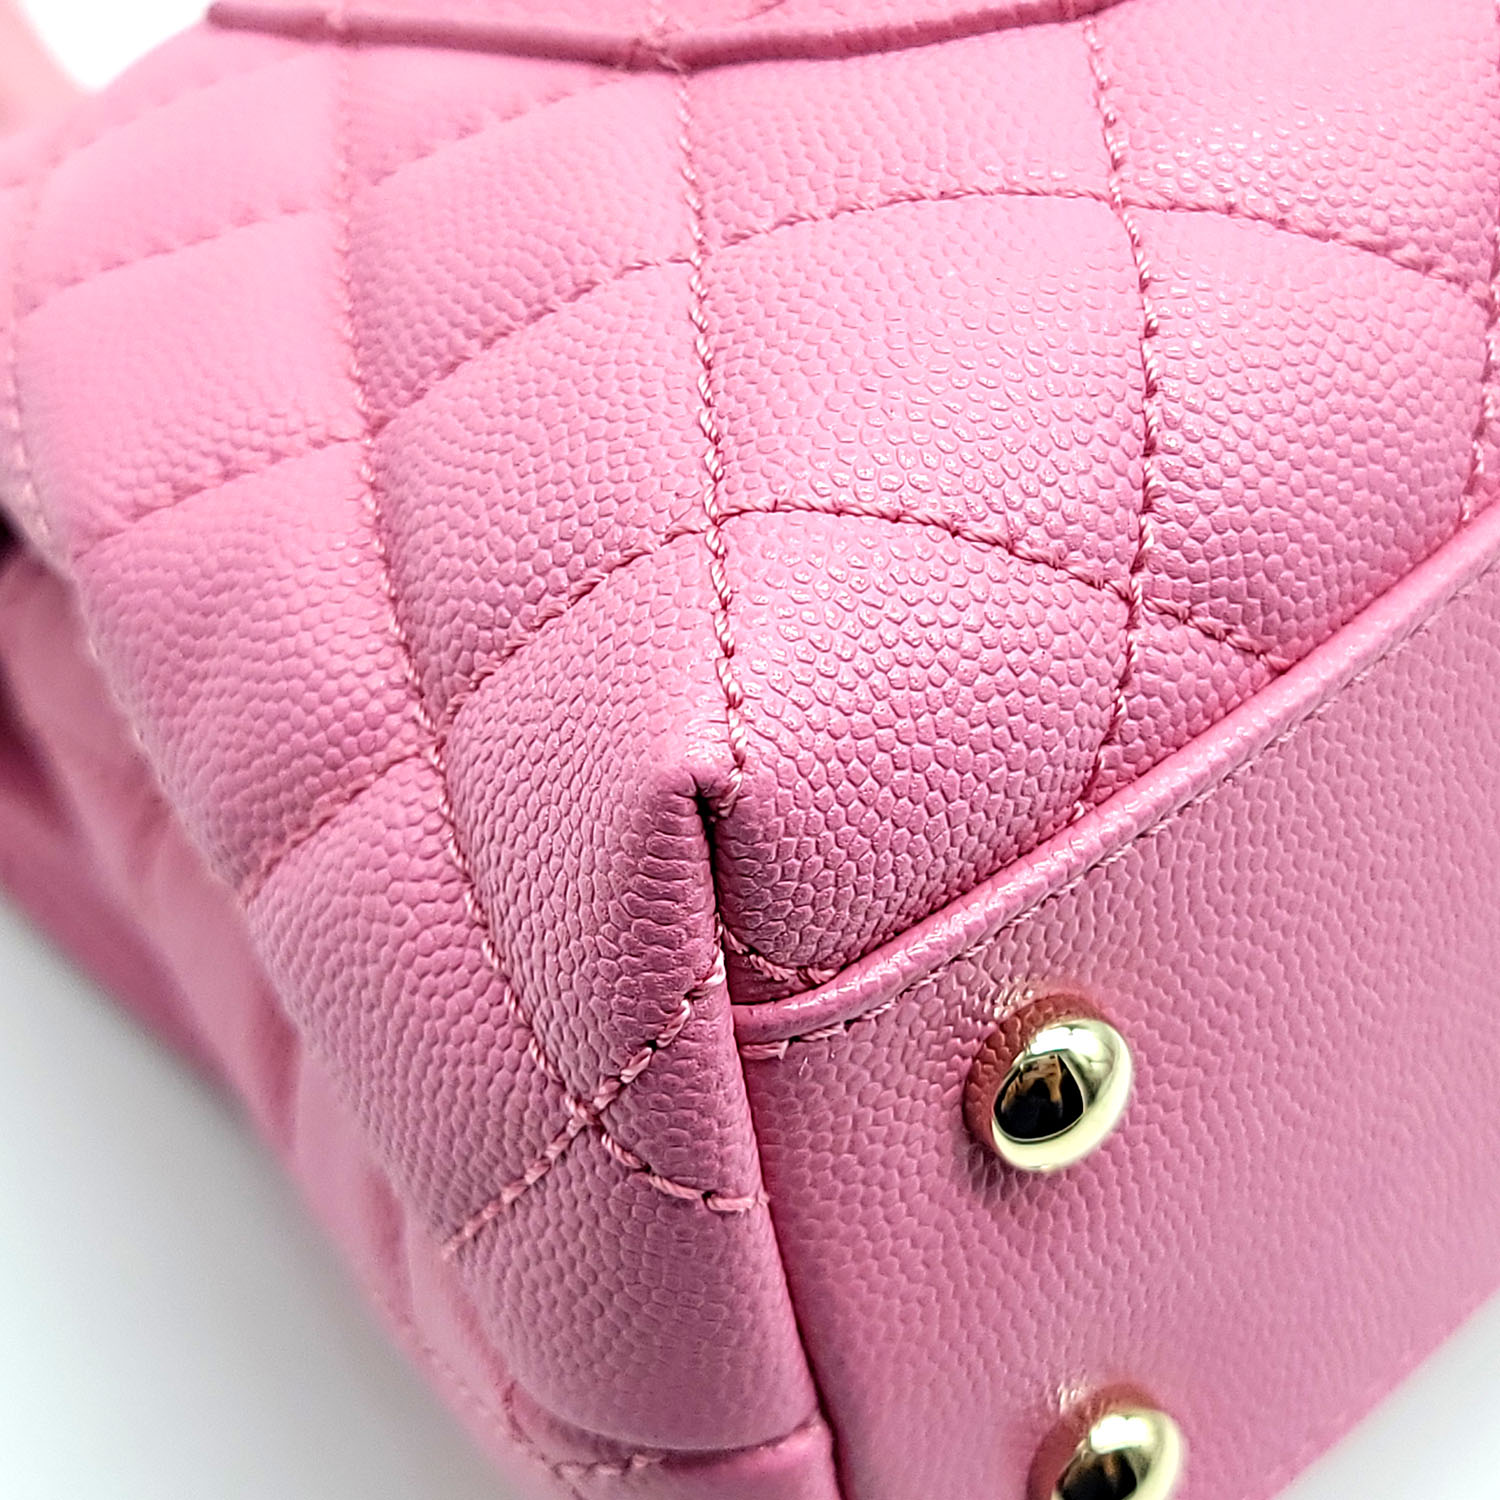 chanel pink handle bag